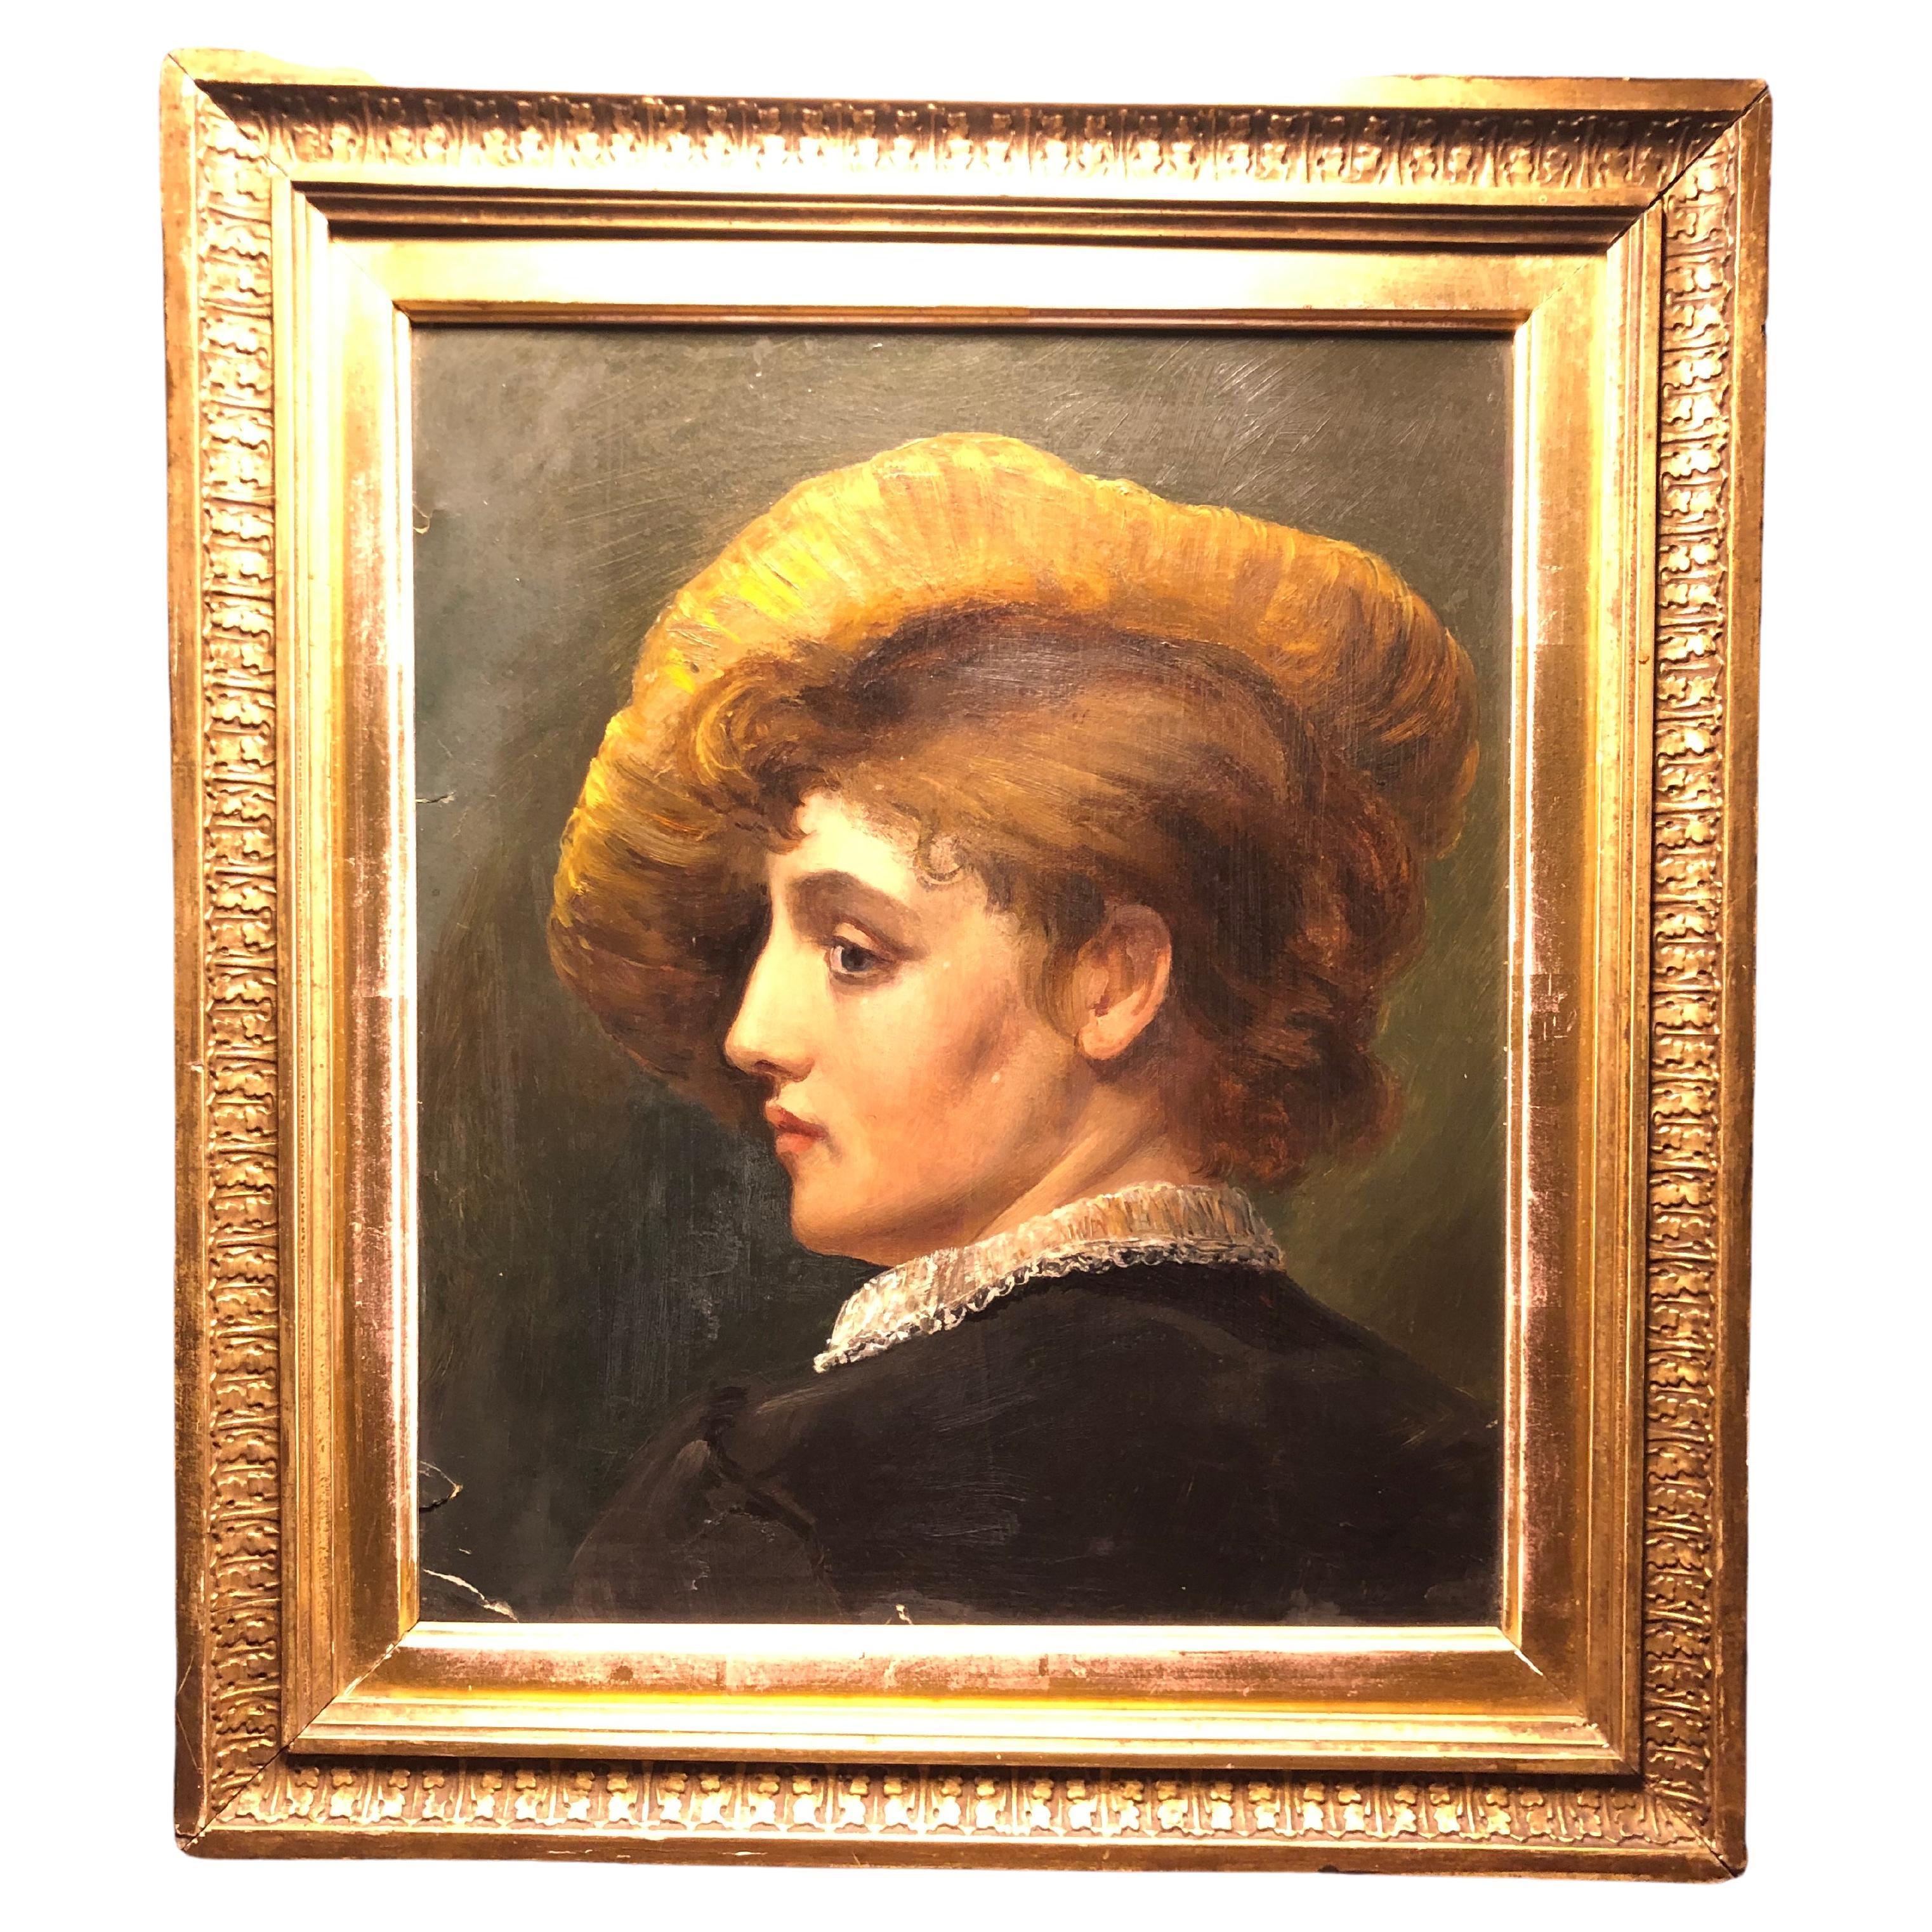 Magnifique portrait ancien d'une femme avec un chapeau